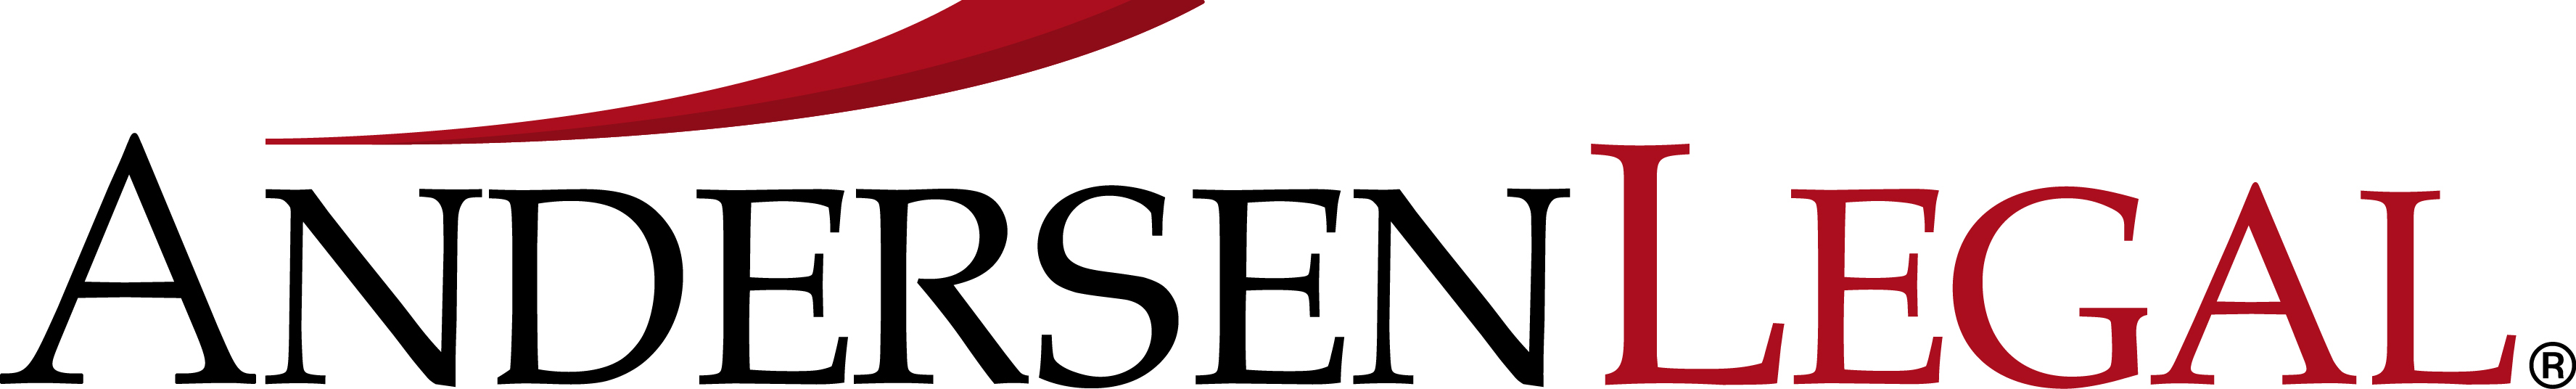 Andersen Legal logo